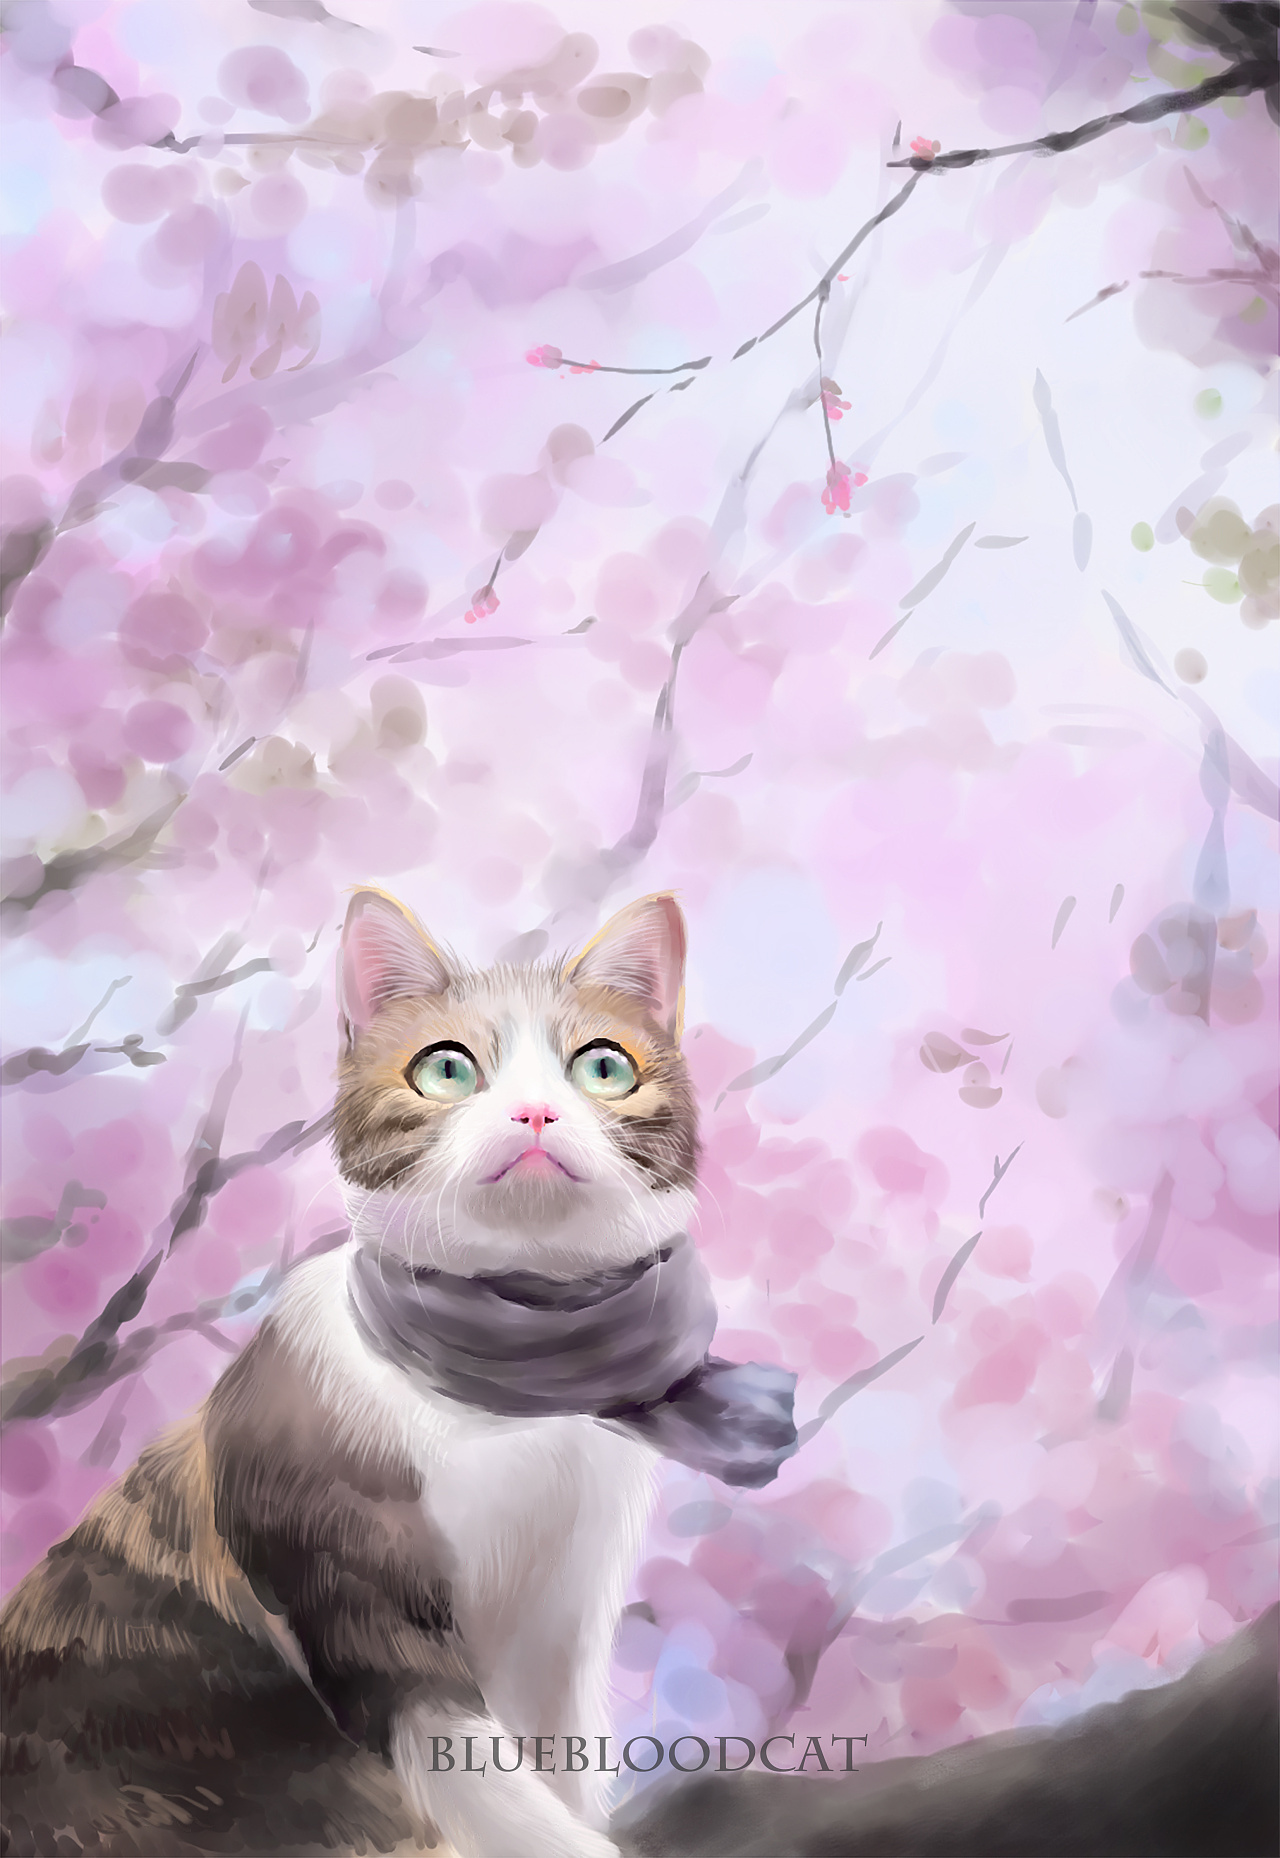 我是哑剧猫，一个喜欢原版樱花动漫的小粉丝

修改后的